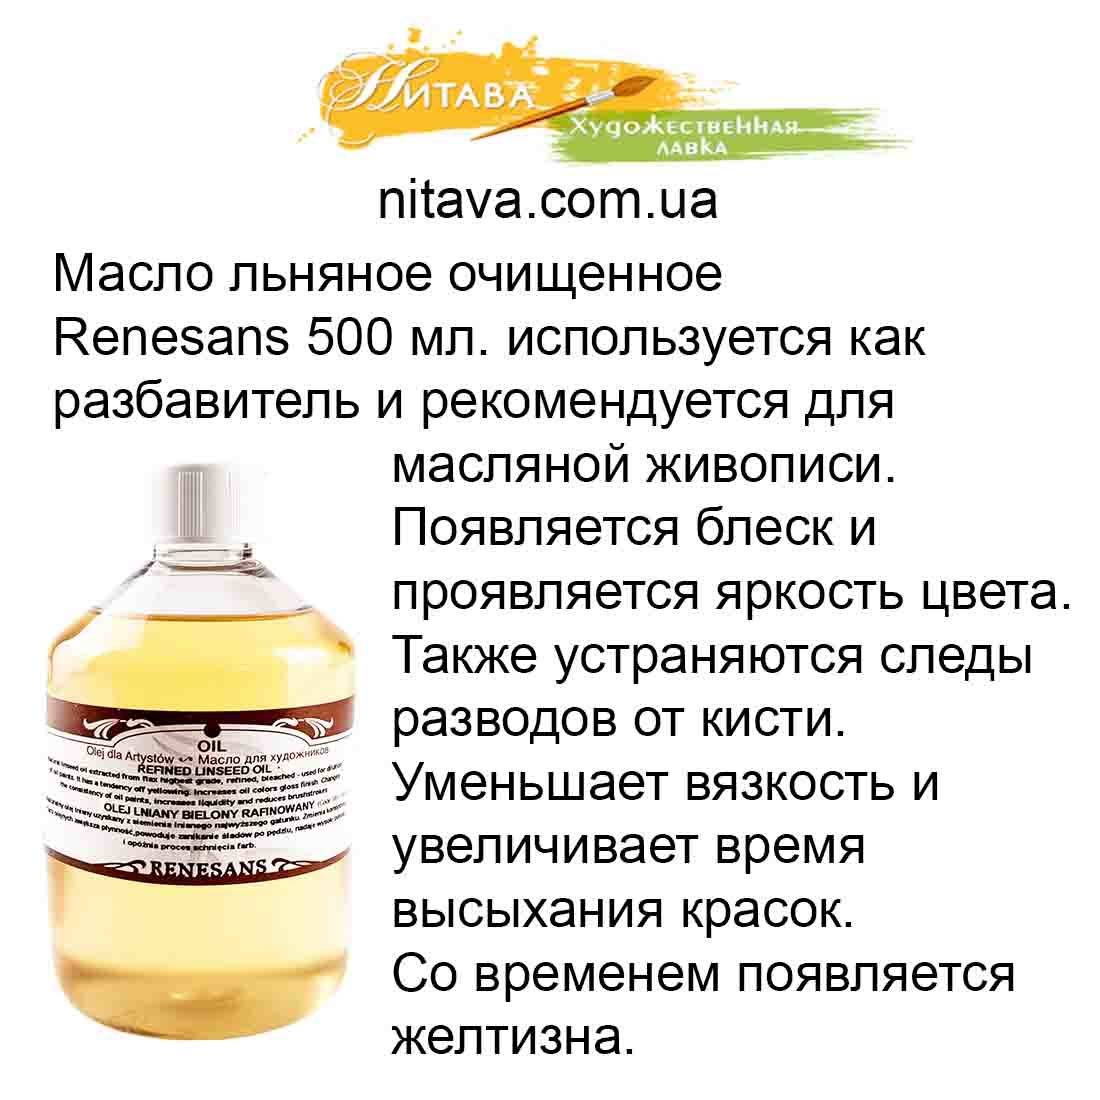 Прием льняного масла внутрь отзывы. Растительное масло при запоре. Льняное масло от запора. Льняное масло при запорах. Полезные масла для организма.